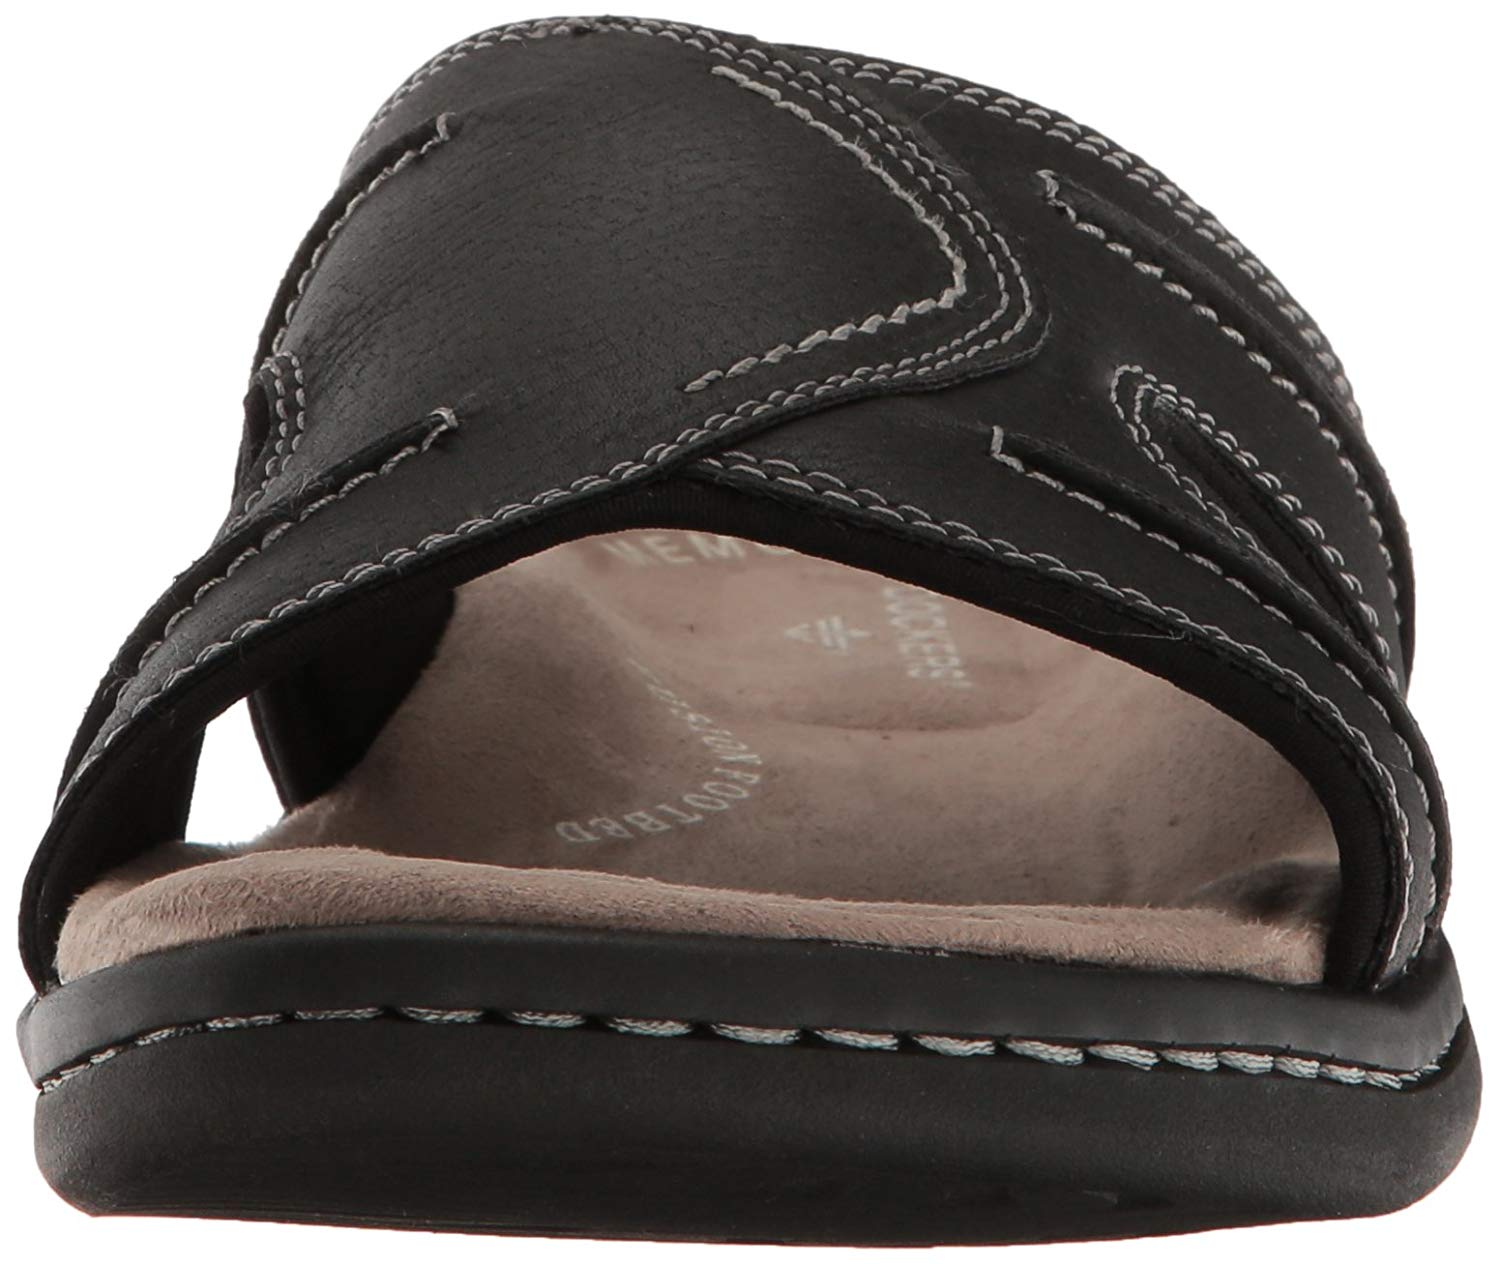 Dockers Men's Sunland Slide Sandal, Black, Size 10.0 s97X | eBay